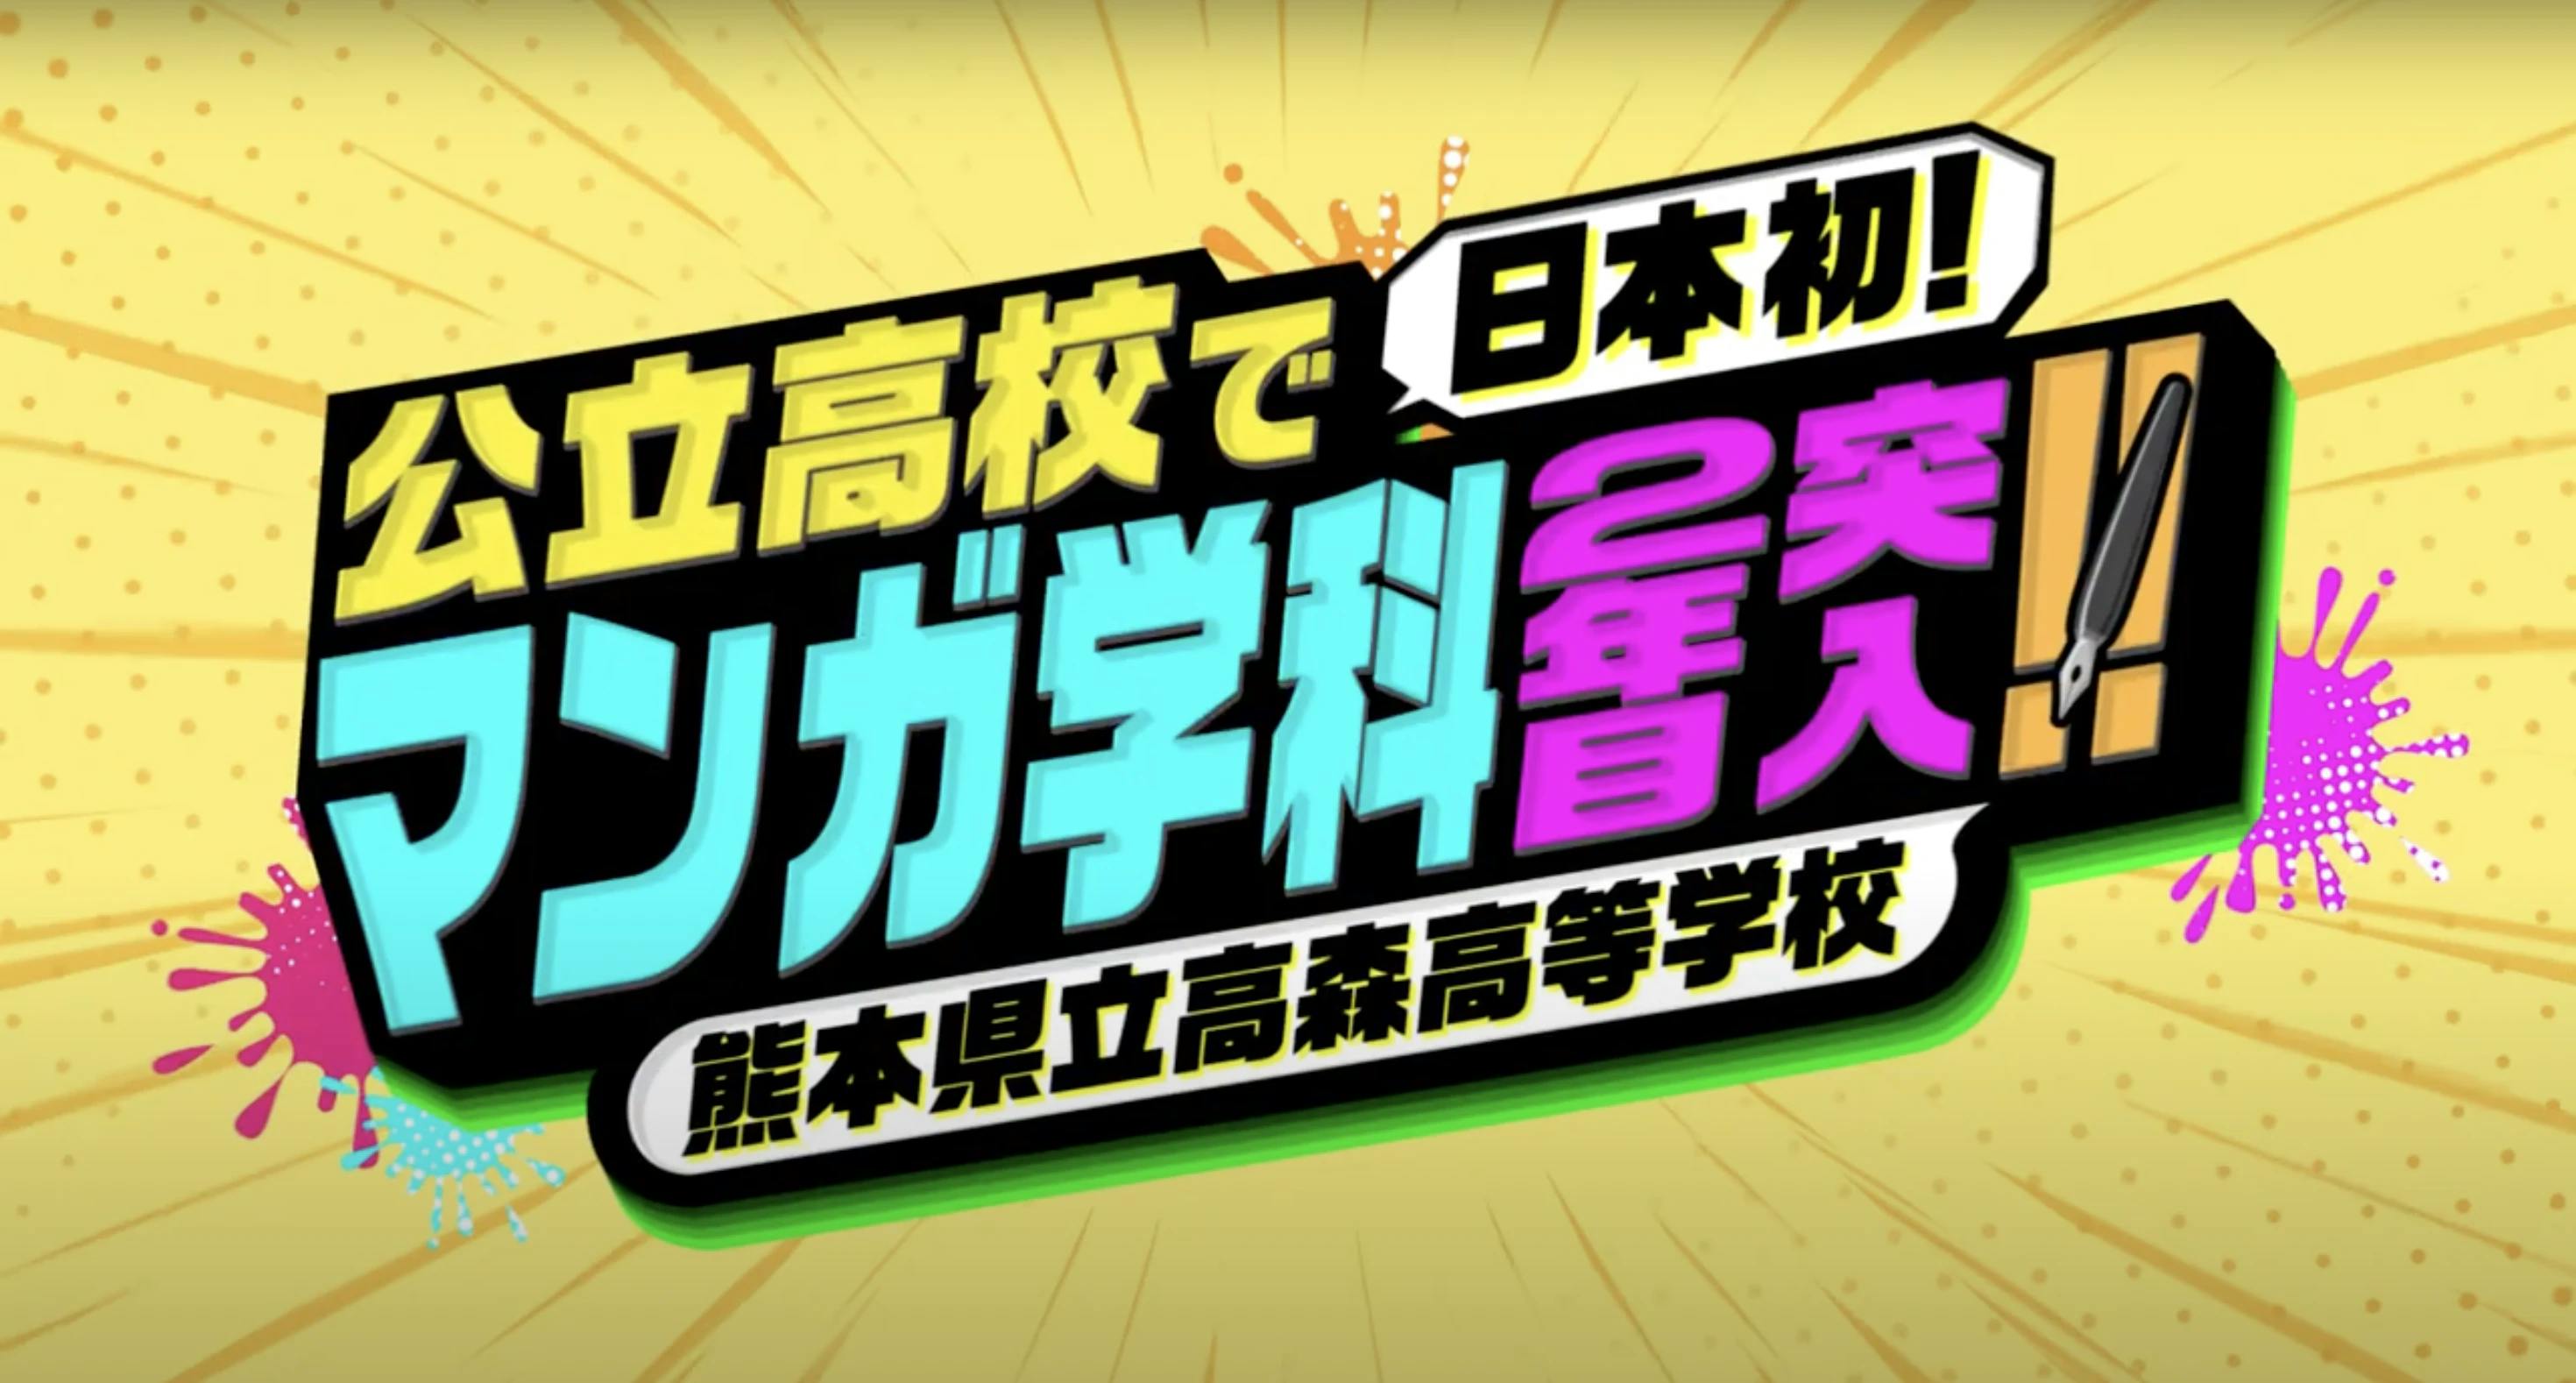 Takamori အထက်တန်းကျောင်း မန်ဂါဌာန၏ မိတ်ဆက်ဗီဒီယို ထွက်ရှိလာပါပြီ။